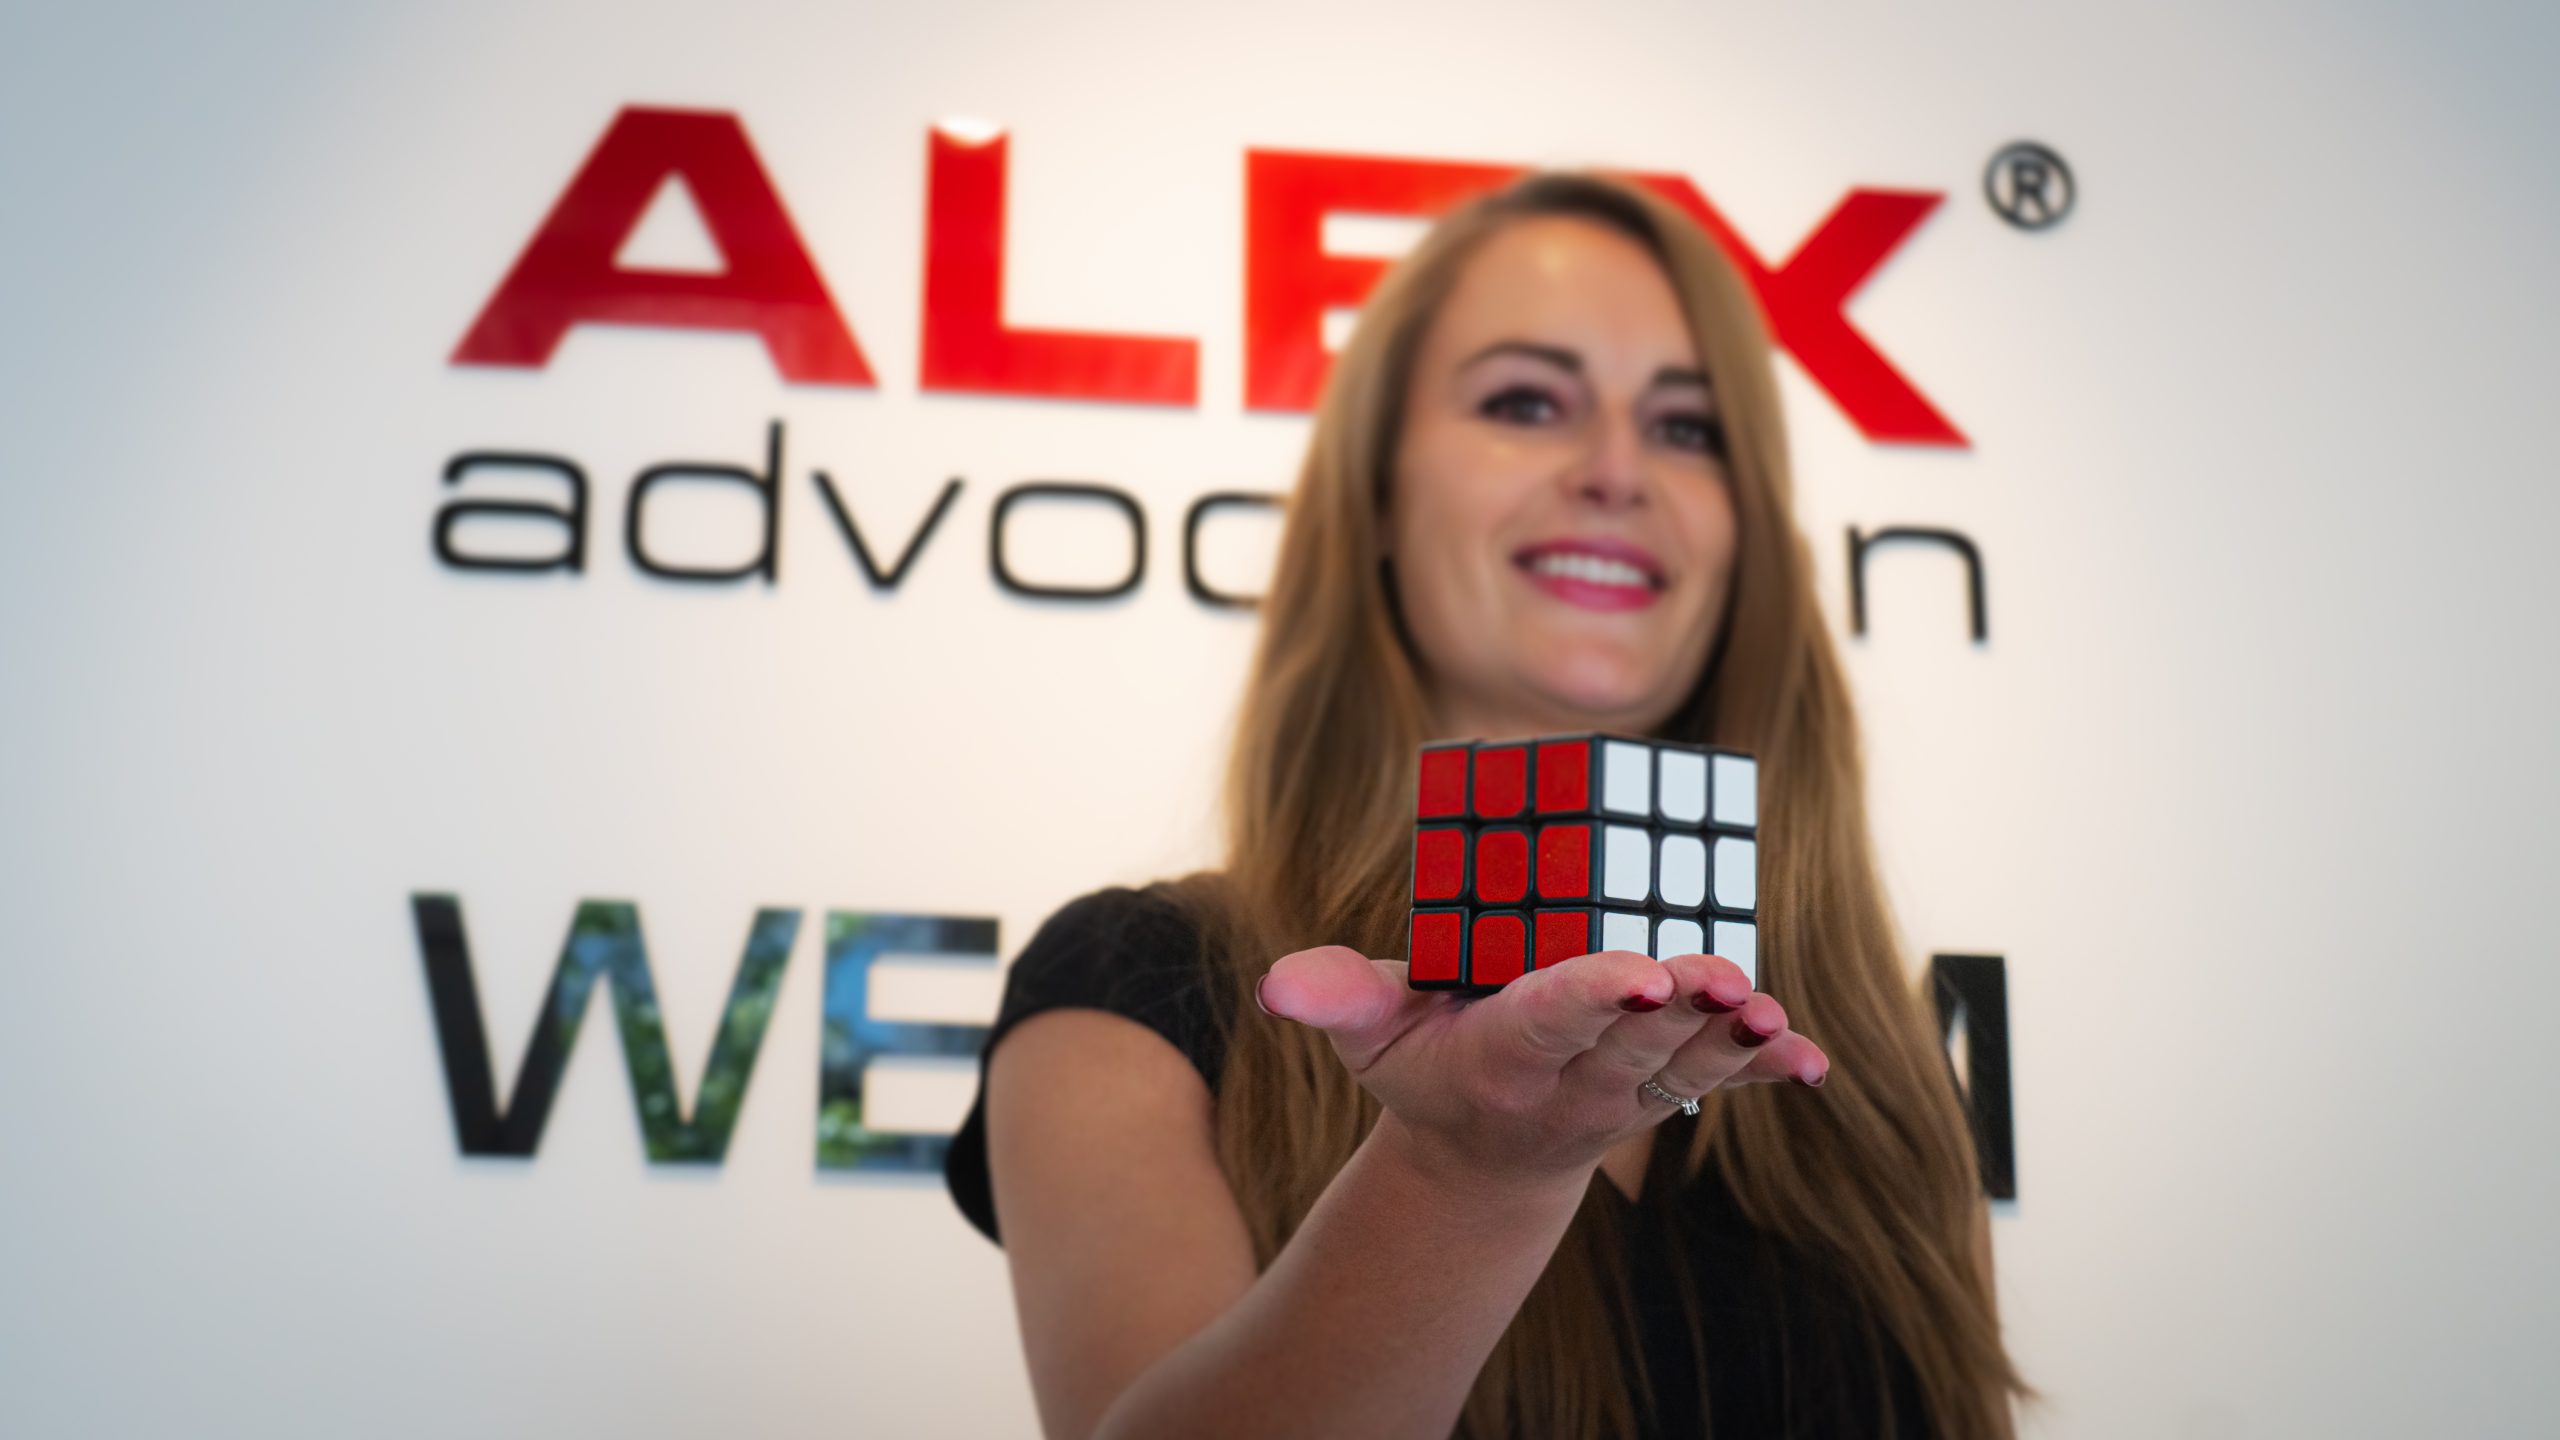 Auteursrechtelijke bescherming van de Rubik’s Cube